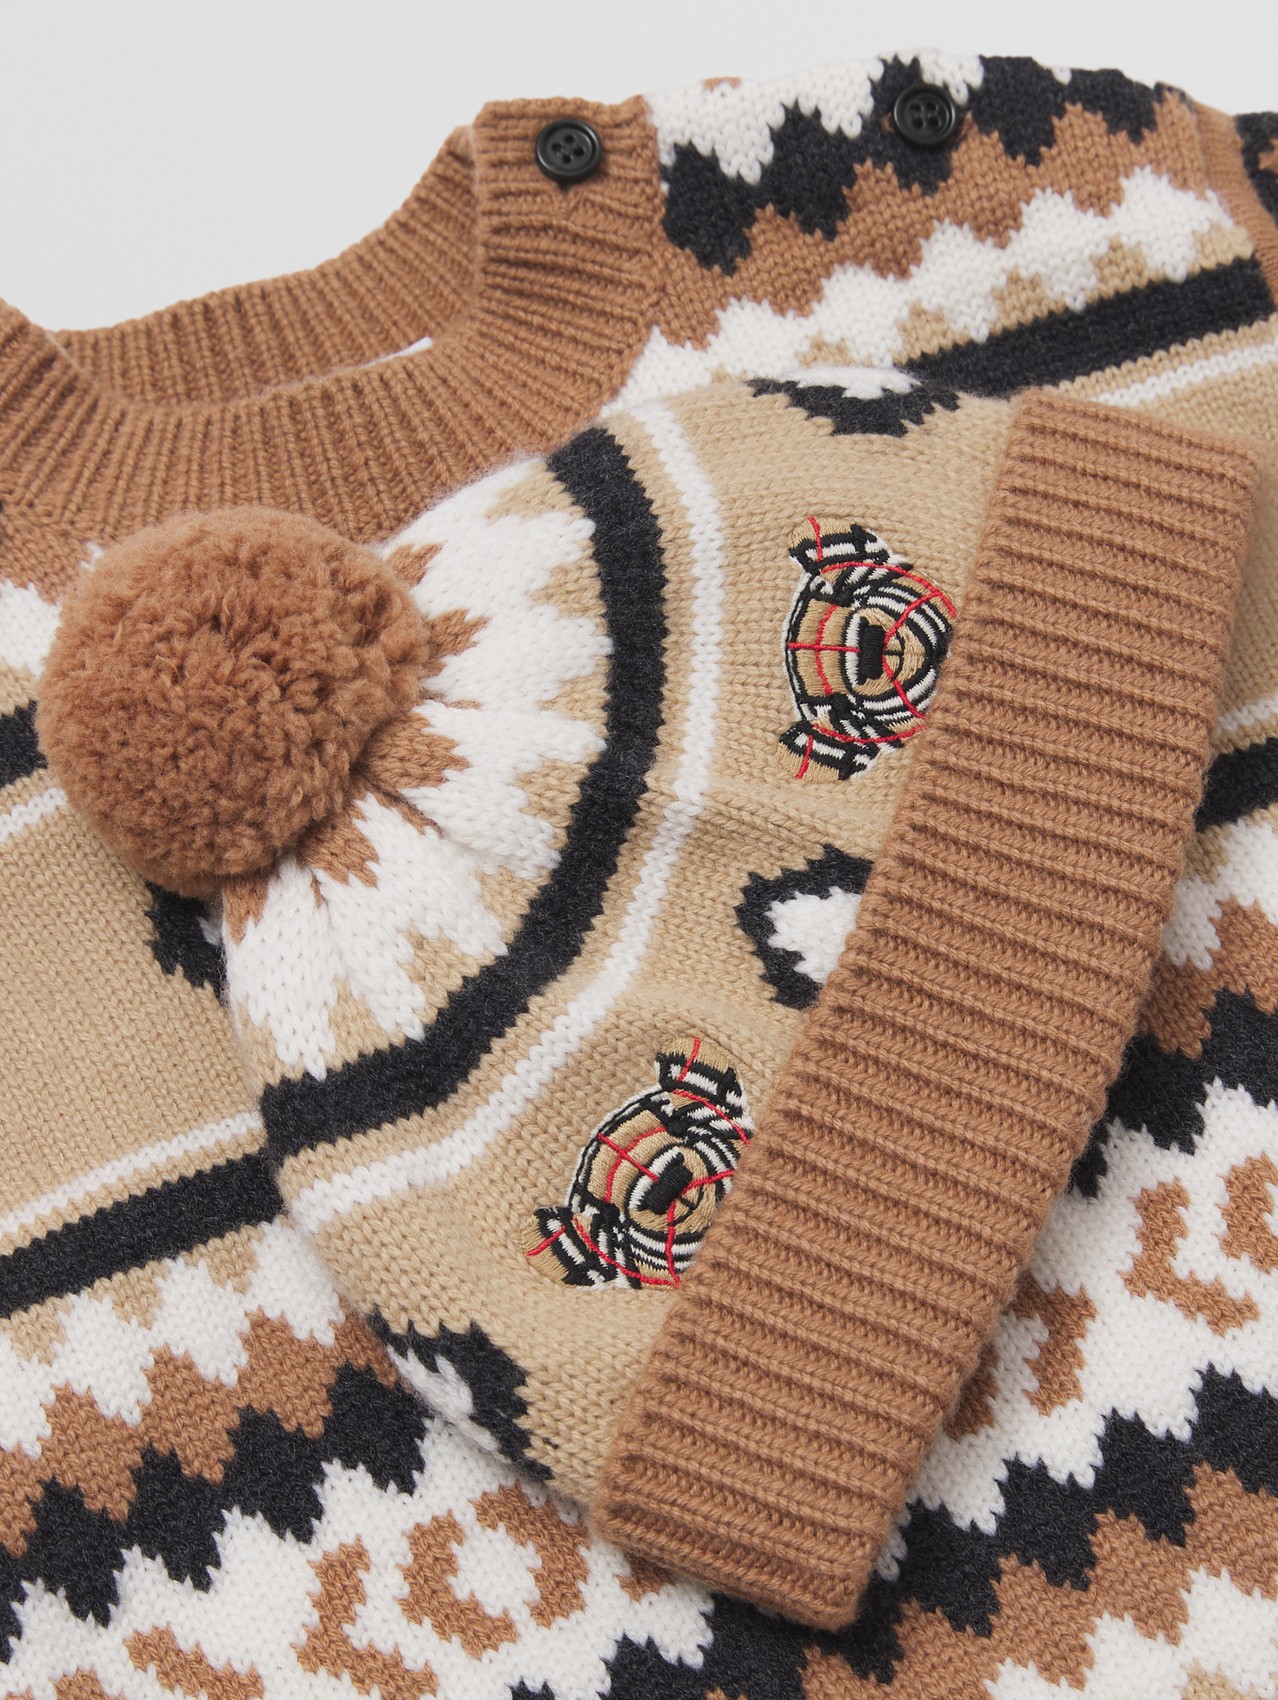 费尔岛花纹羊绒混纺两件套婴儿礼品套装 in 驼色